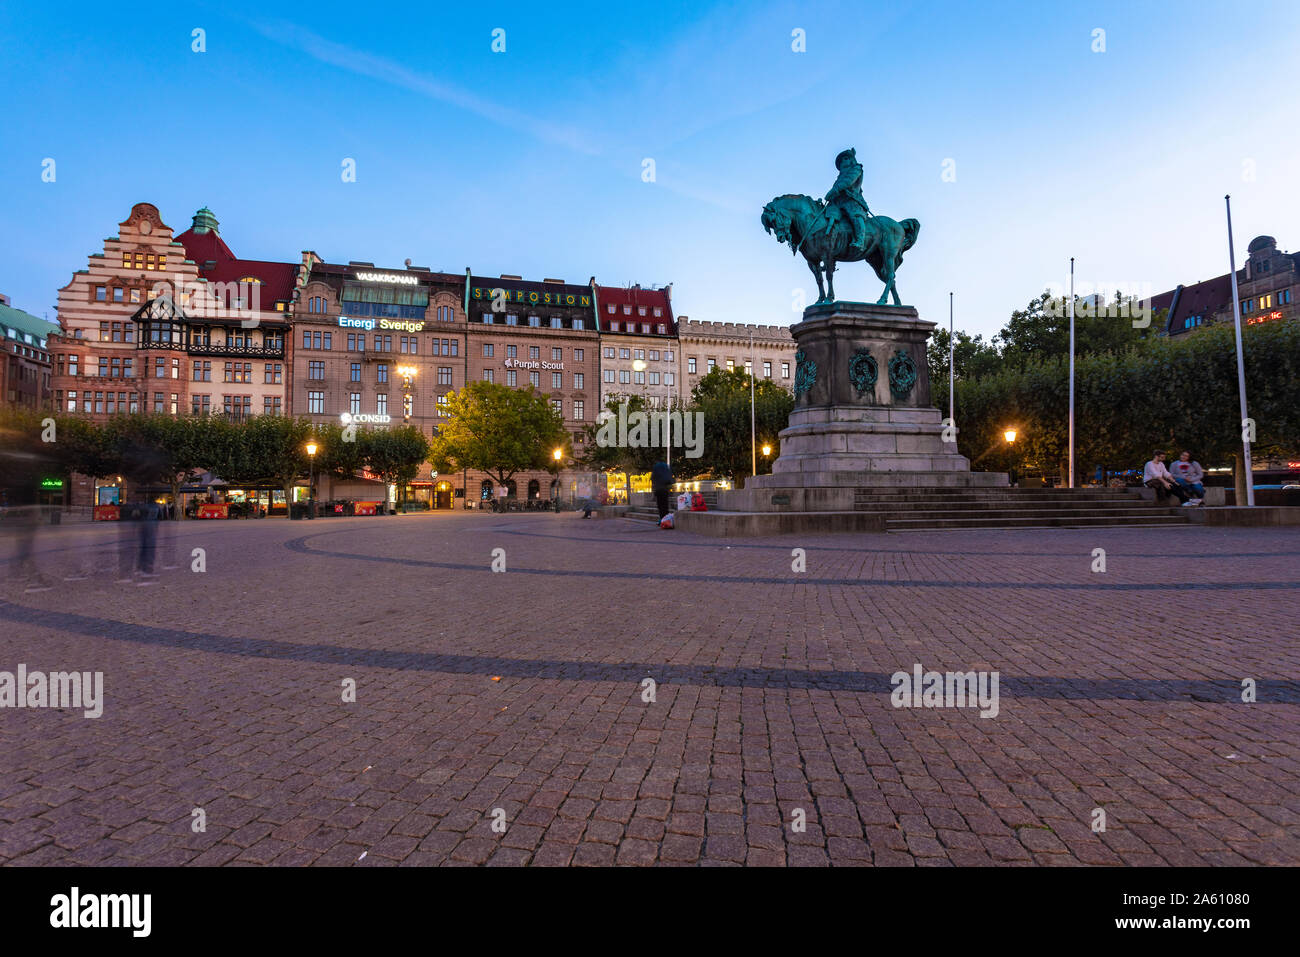 Carlos X Gustavo estatua en la plaza de la ciudad contra el cielo al atardecer en Malmo, Suecia Foto de stock